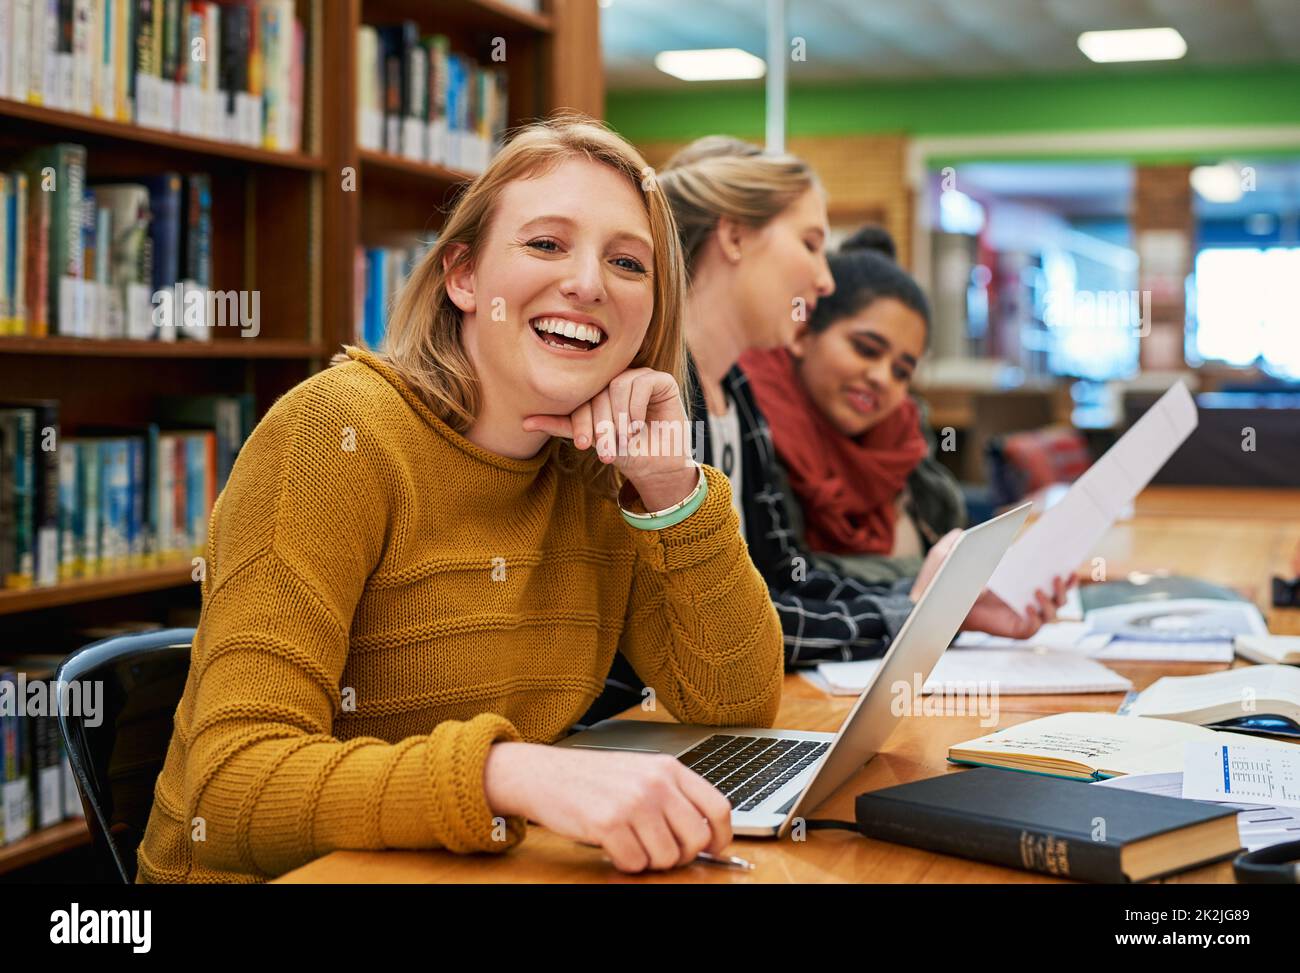 Sie ist sich sicher, dass sie den Test bestehen wird. Porträt einer fröhlichen jungen Studentin, die an ihrem Laptop arbeitet und in einer Bibliothek studiert. Stockfoto